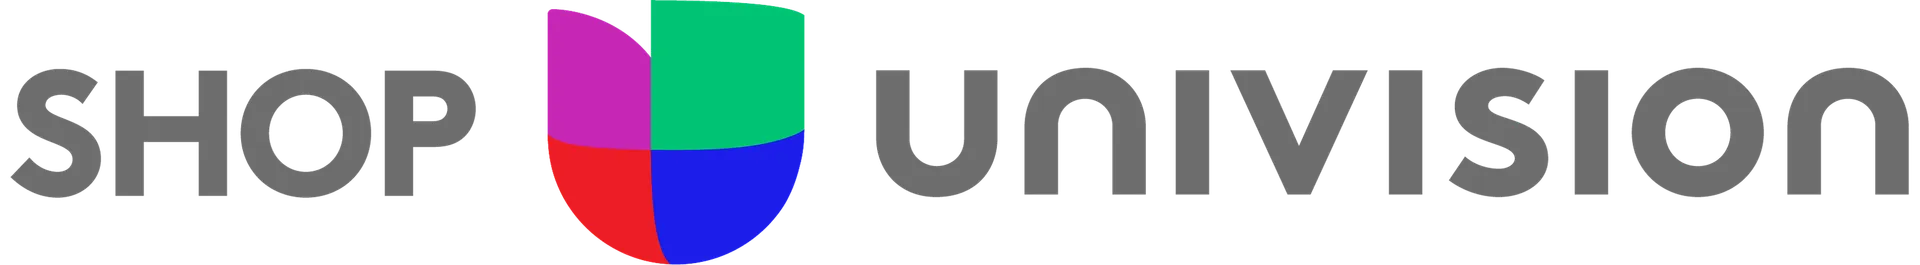 SHOP UNIVISIÓN logo de catálogo